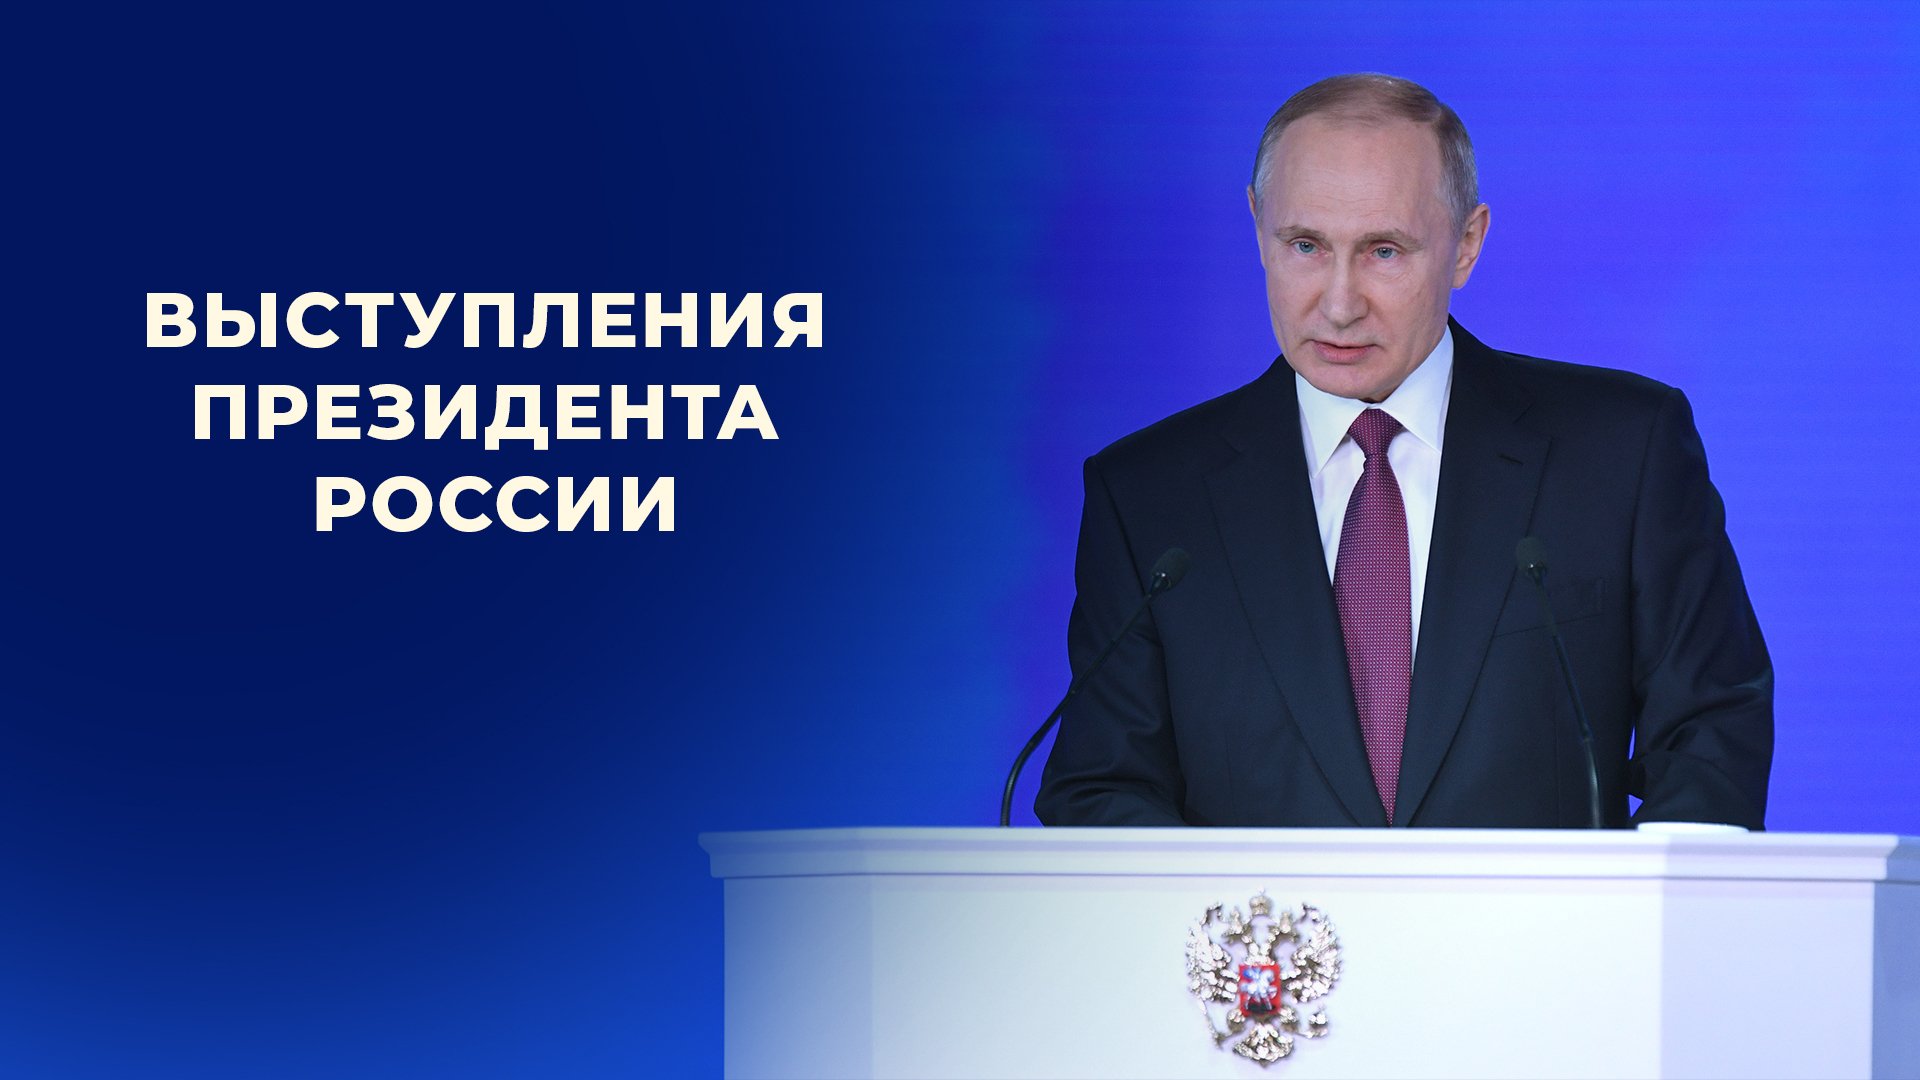 Выступления президента России